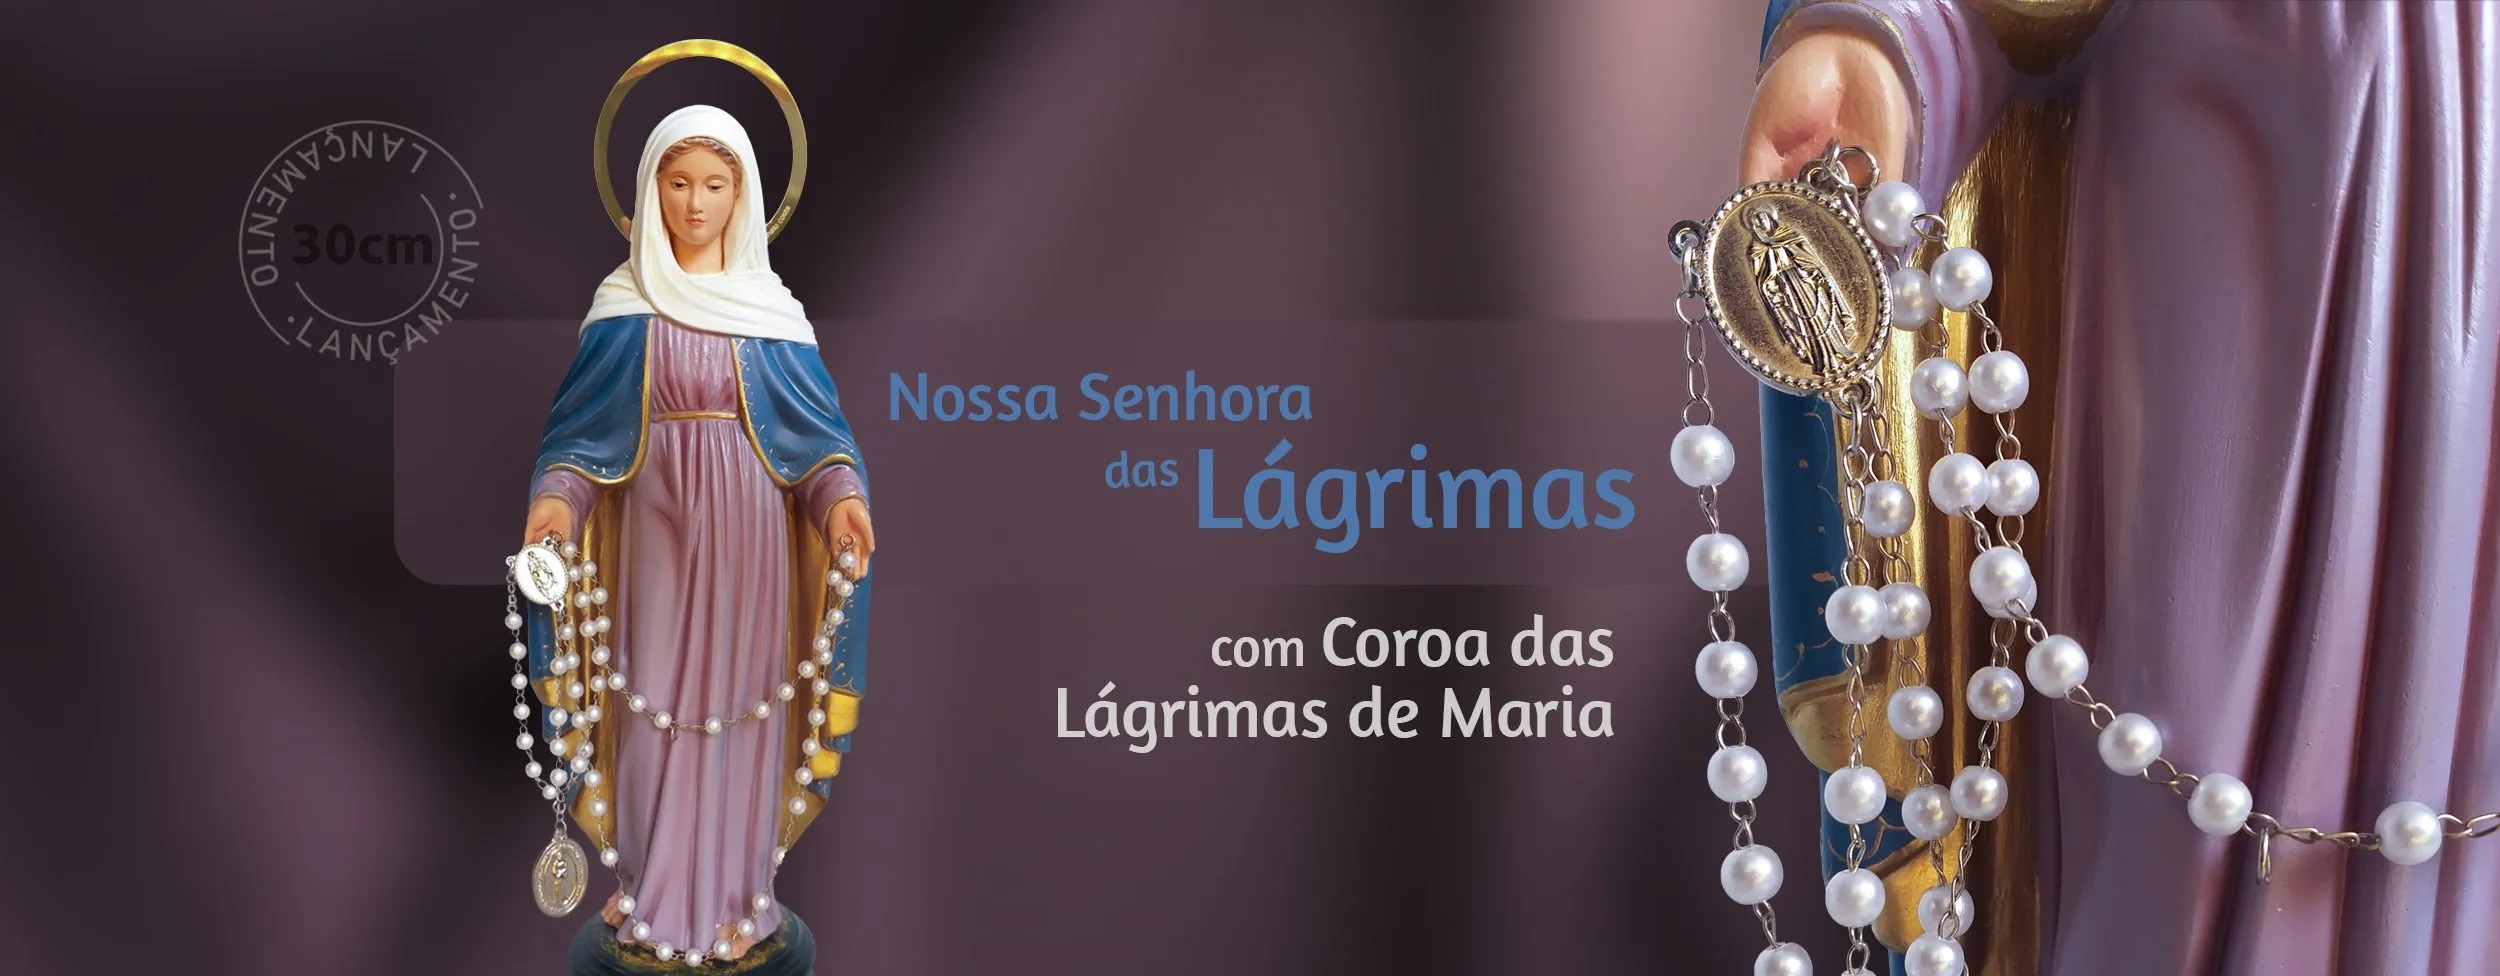 Imagem de Nossa Senhora das Lágrimas com Coroa das Lágrimas de Maria - Artesanato Costa